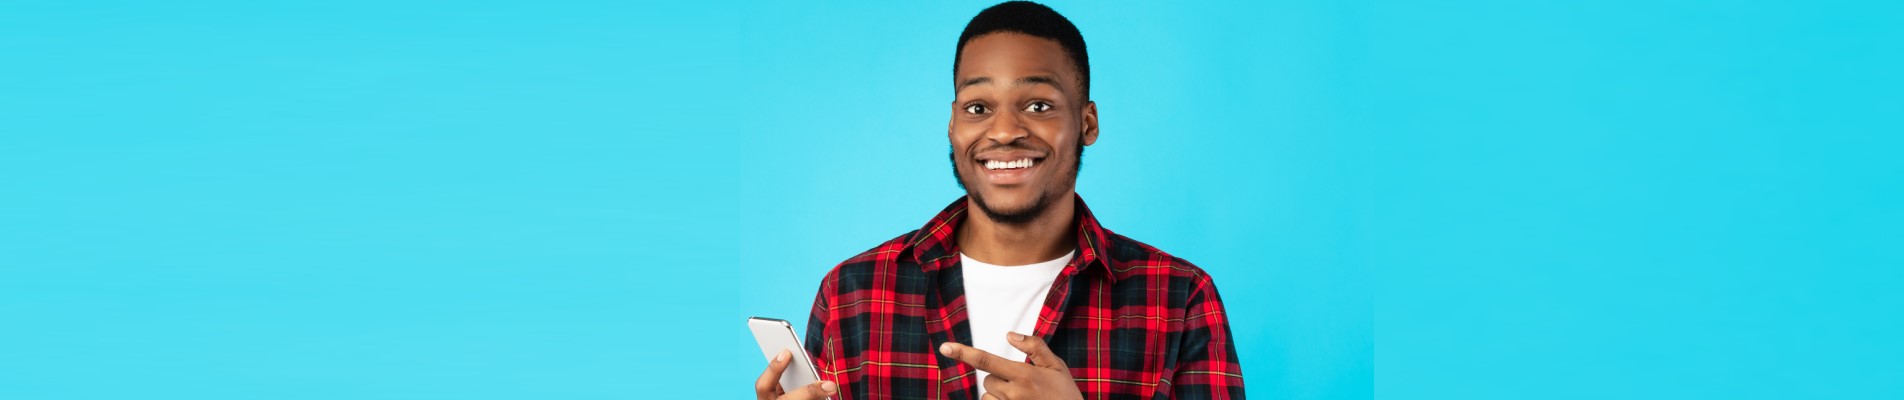 12 dicas de como organizar as finanças e sair do vermelho | Foto de um homem sorridente apontadno para o celular | Economia e renda extra | Eu Dou Conta